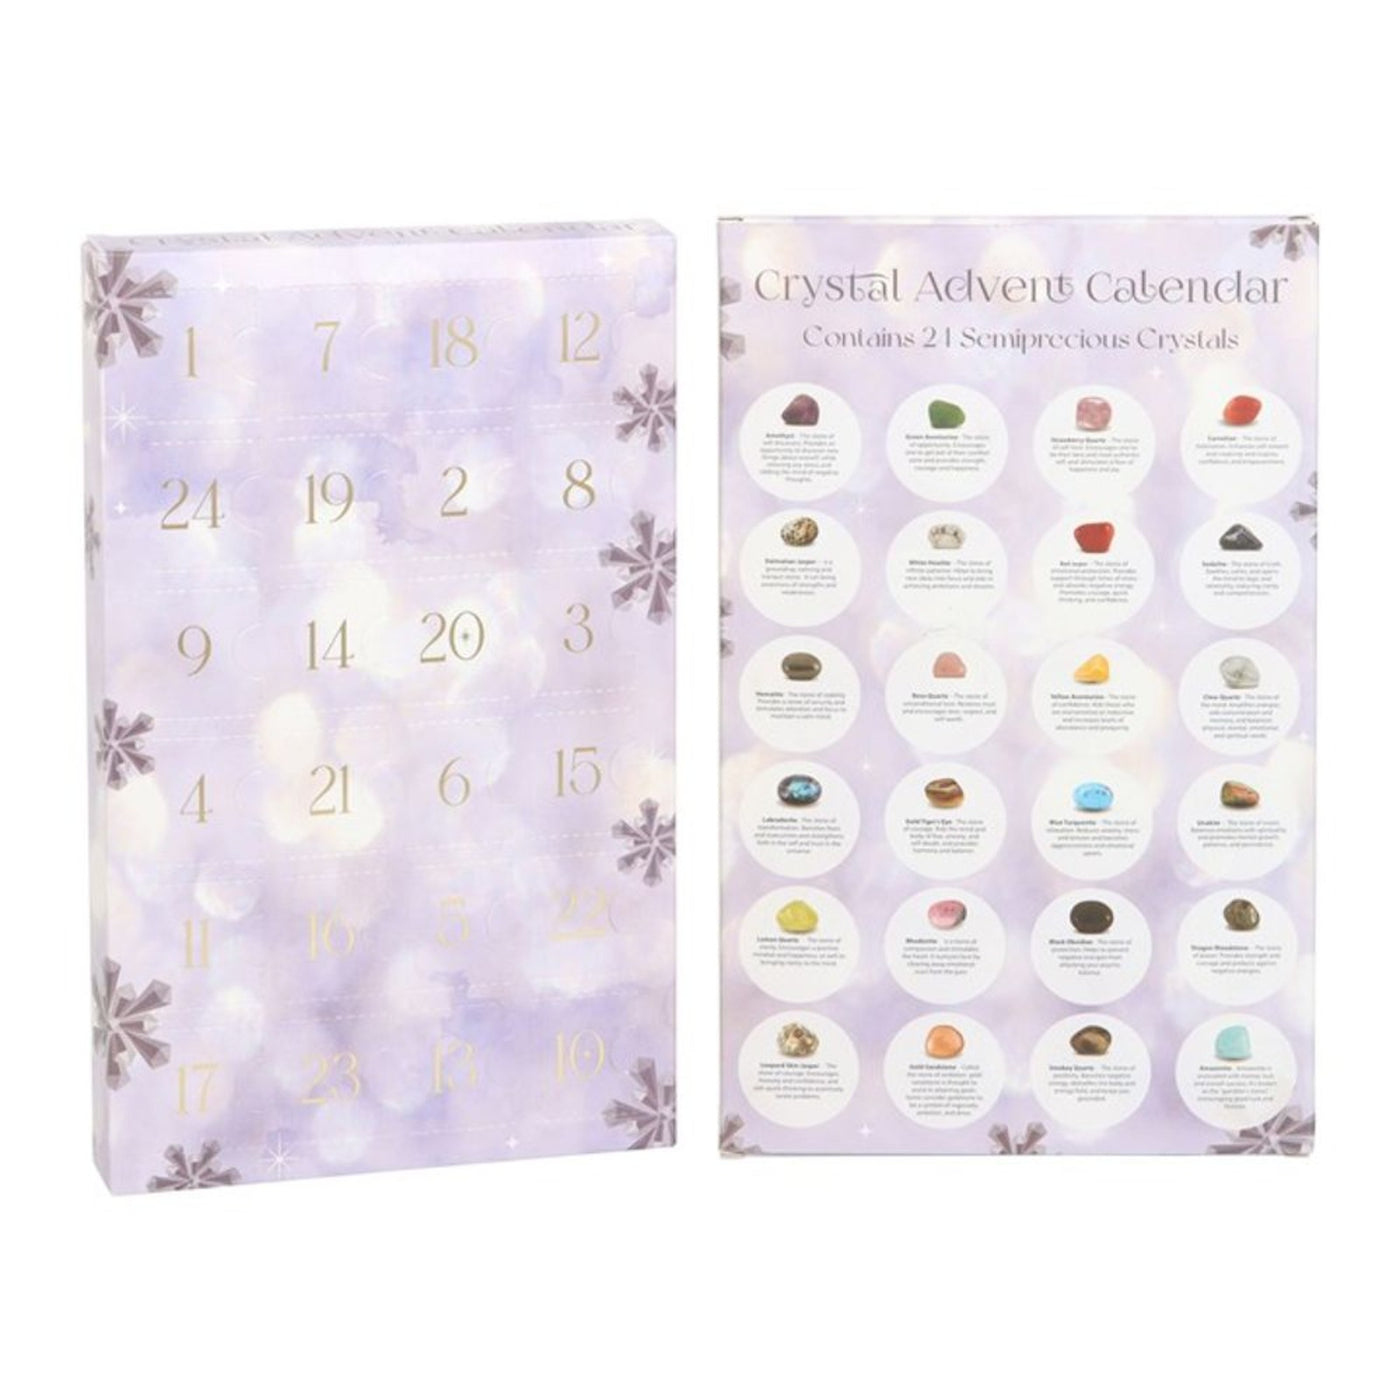 24 Gemstone Crystal Advent Calendar In Gift Box.